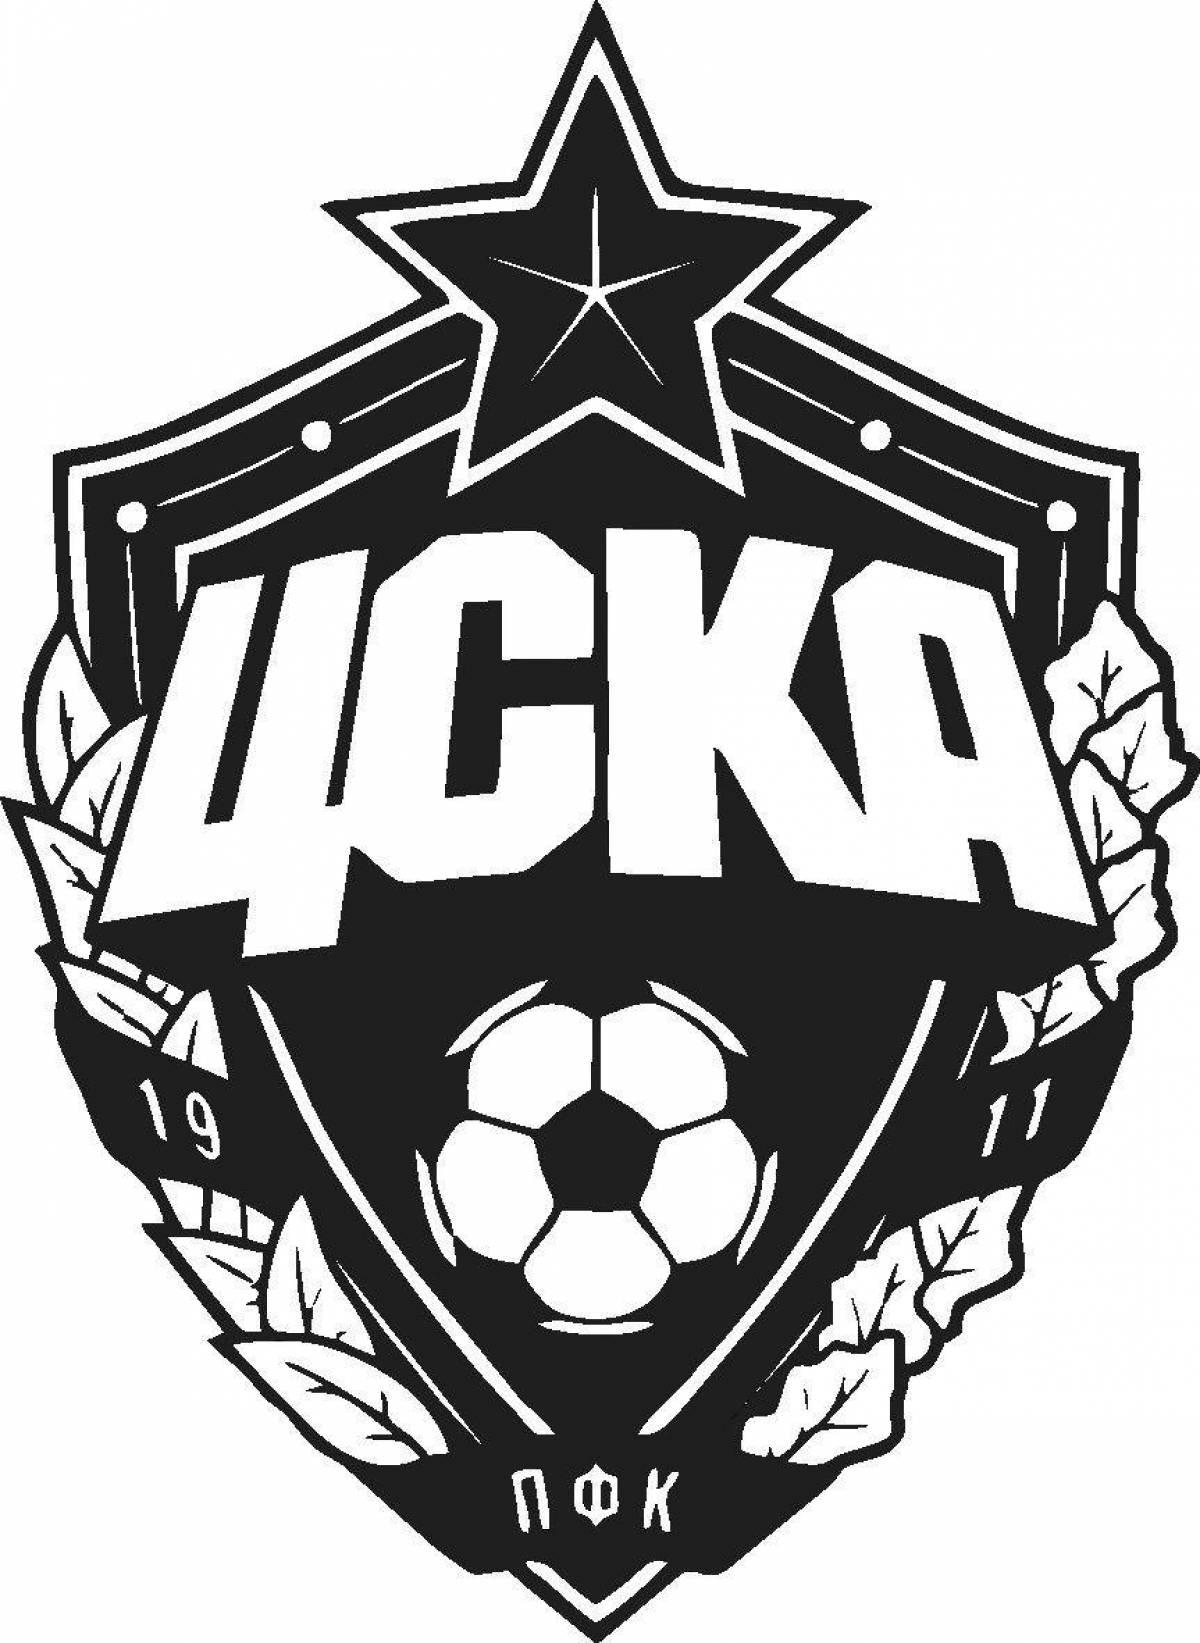 Creative coloring of the CSKA logo